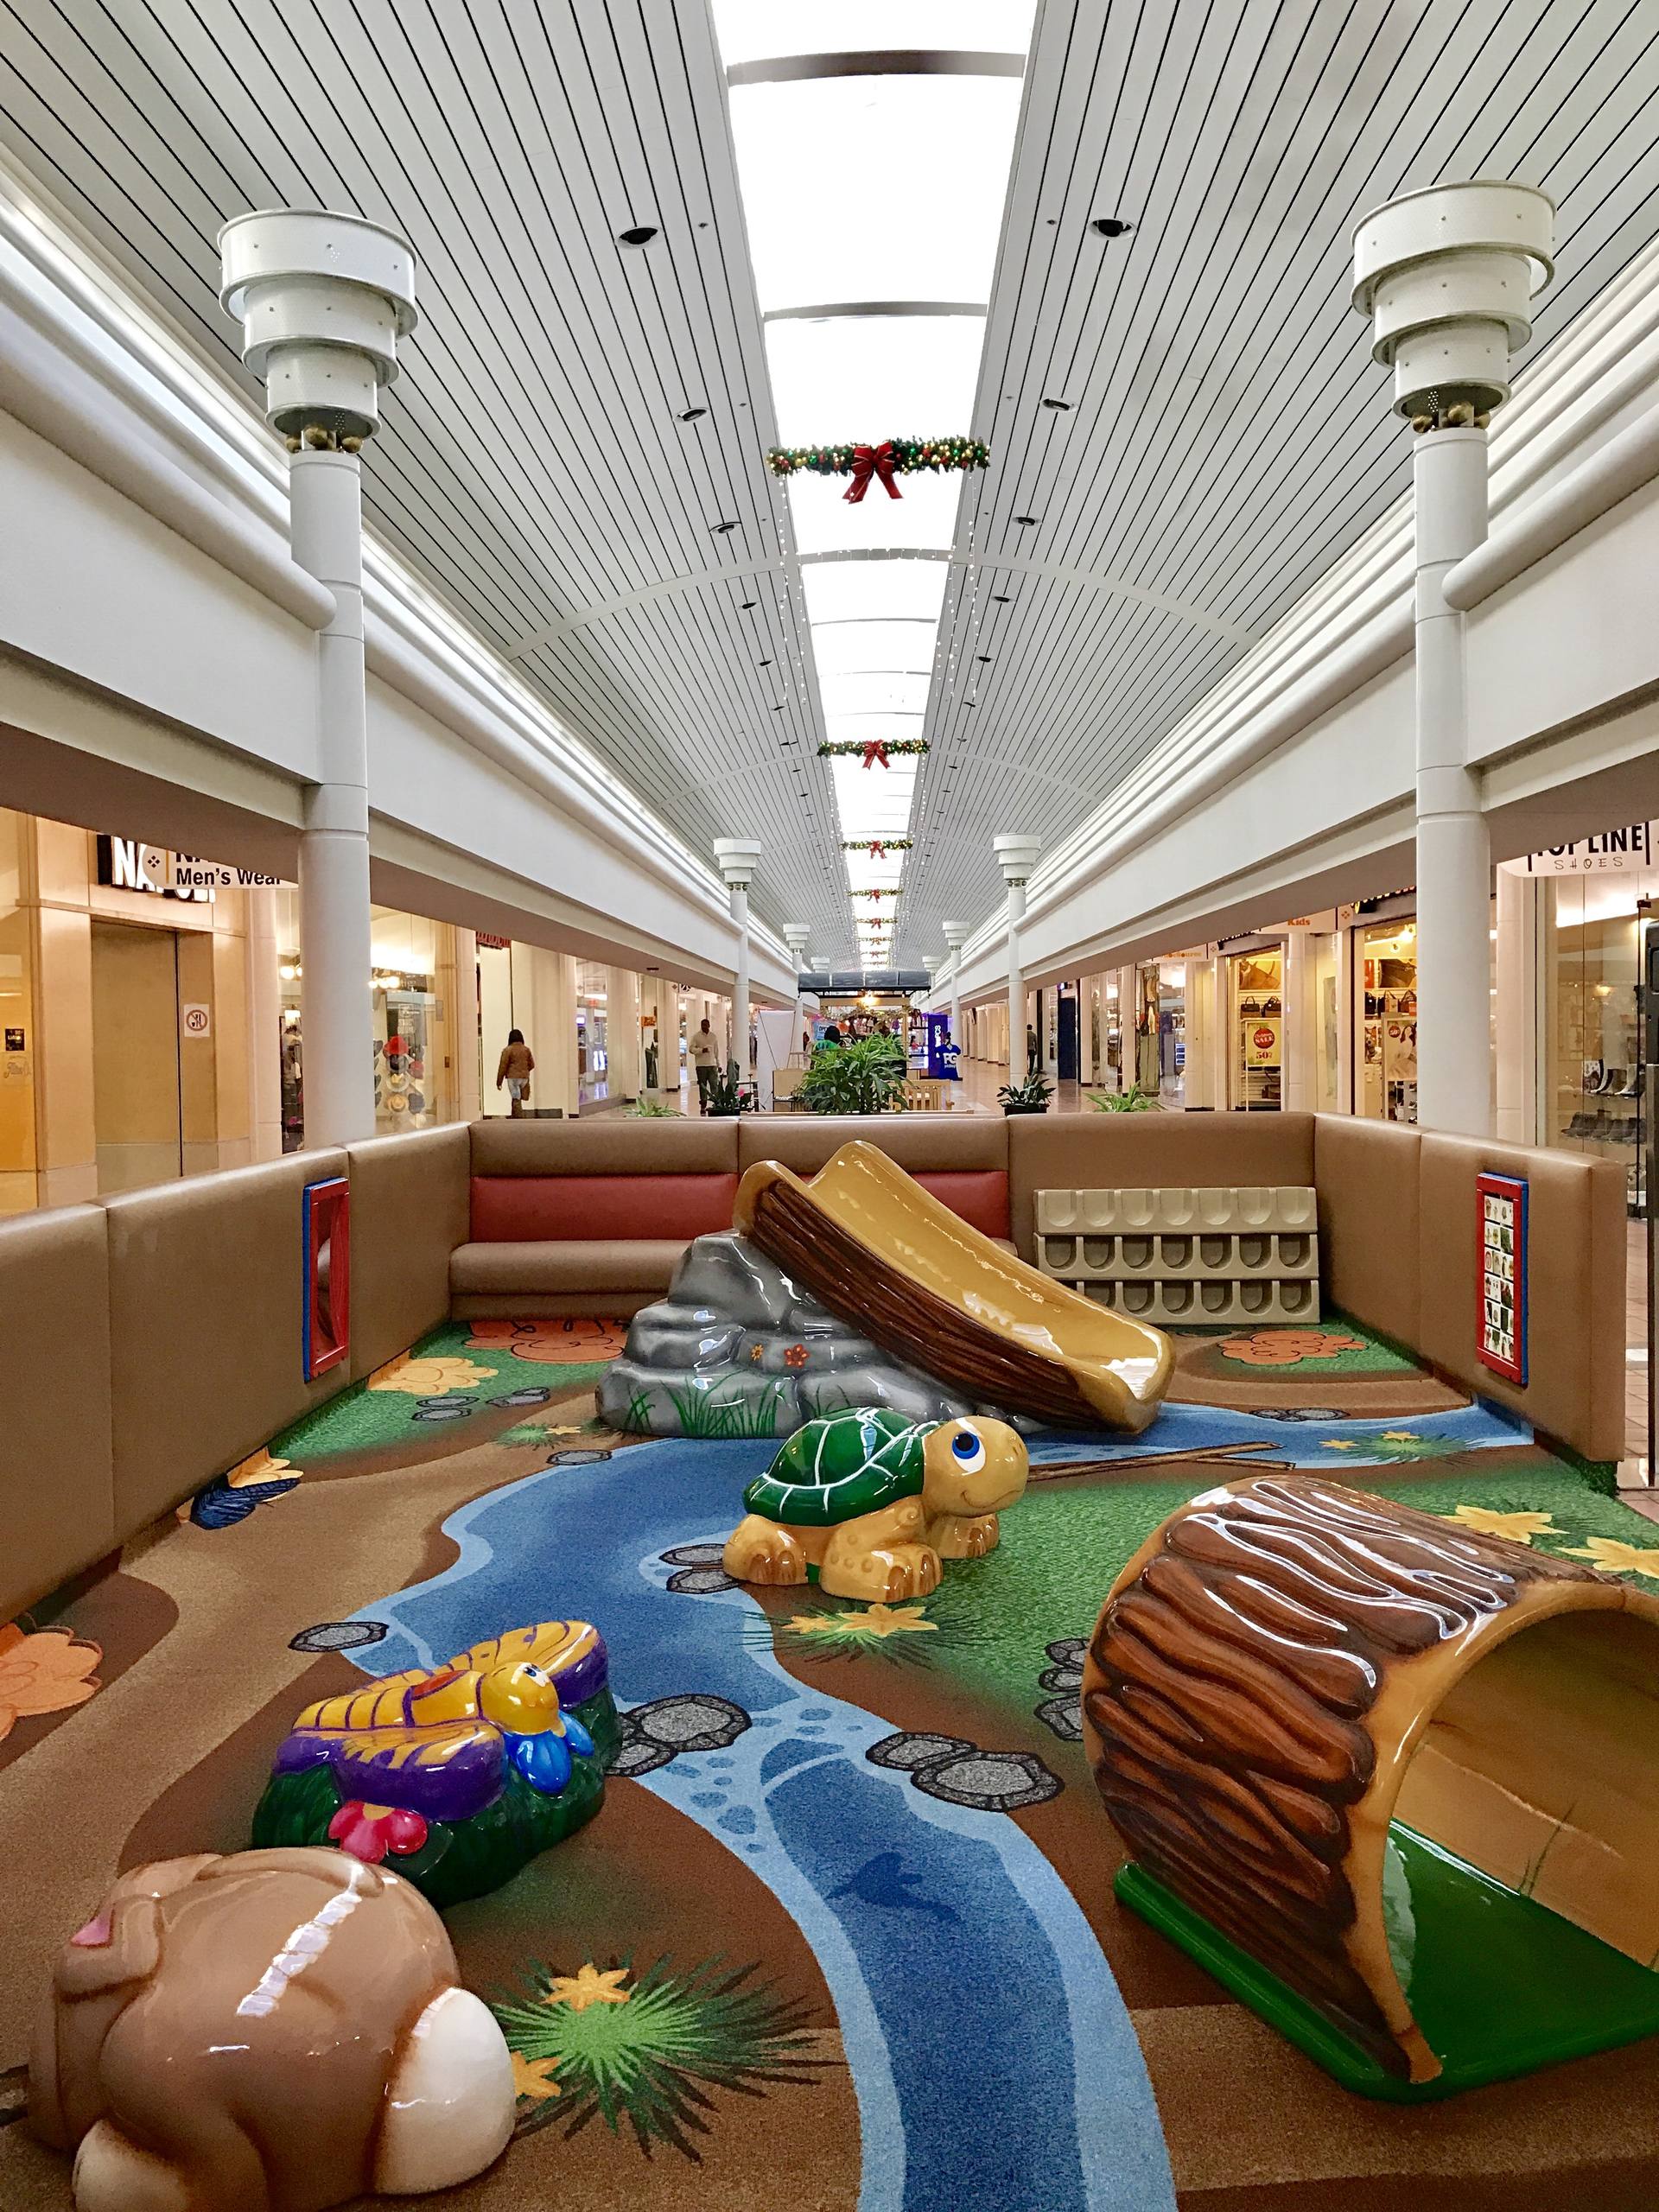 Greenbriar Mall - Wikipedia